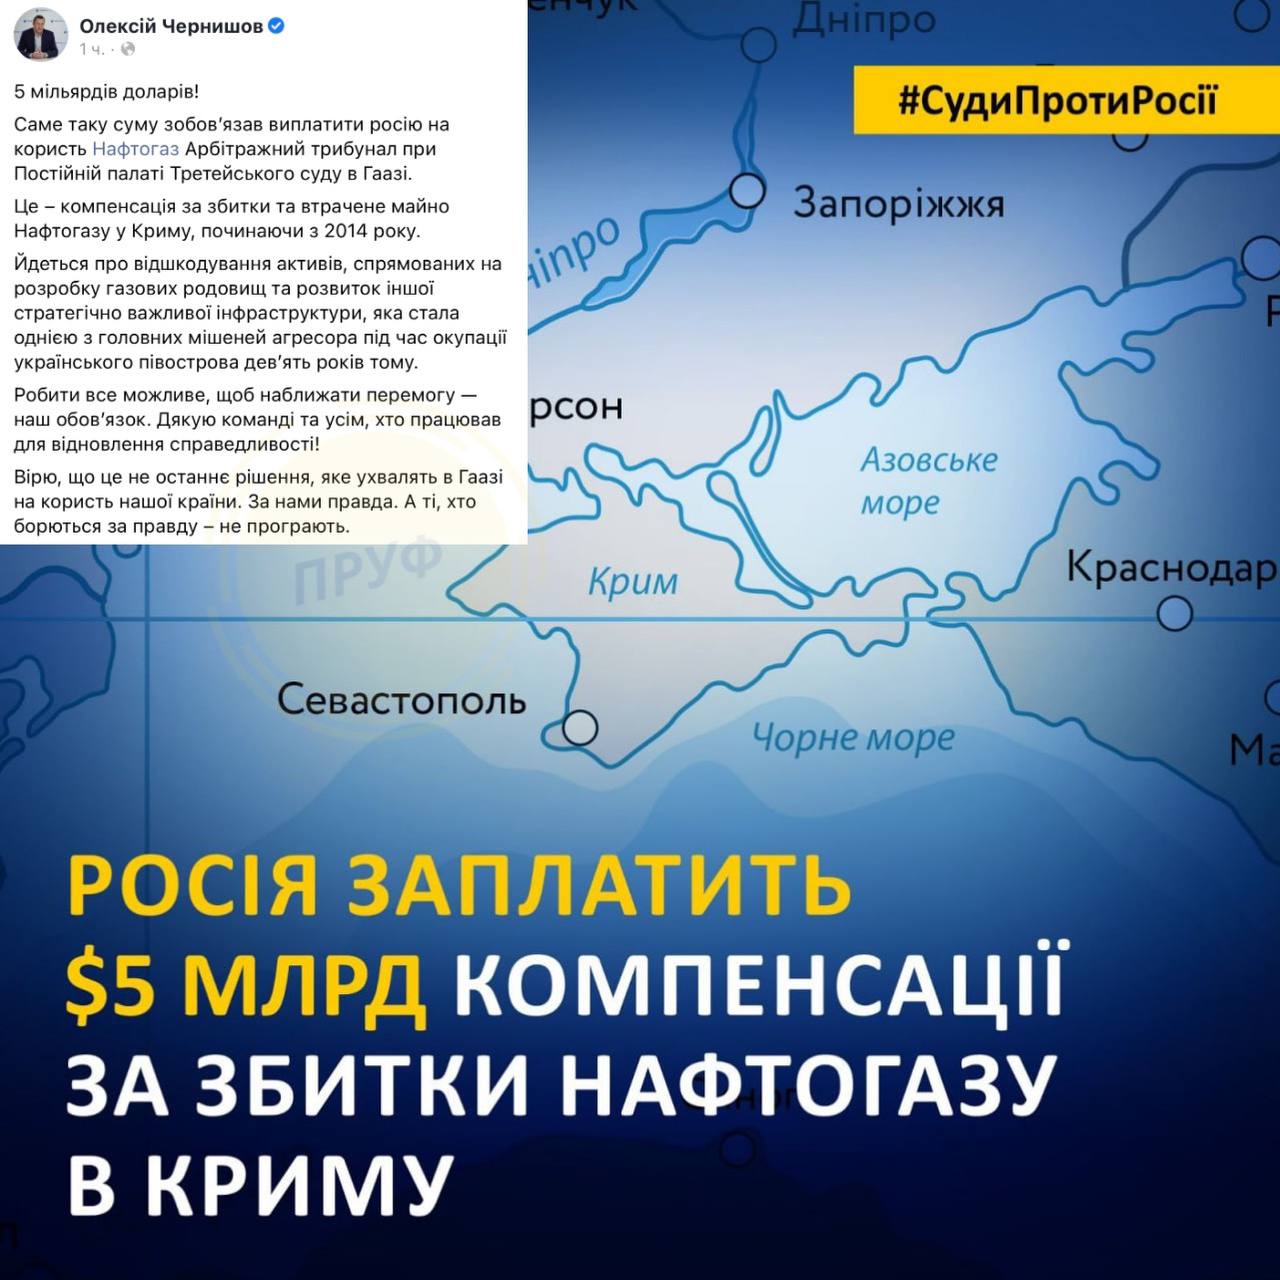 Гаазький суд зобов’язав рф виплатити 5 мільярдів доларів компенсації "Нафтогаз Україна", за захоплене з 2014 року майно компанії в Криму